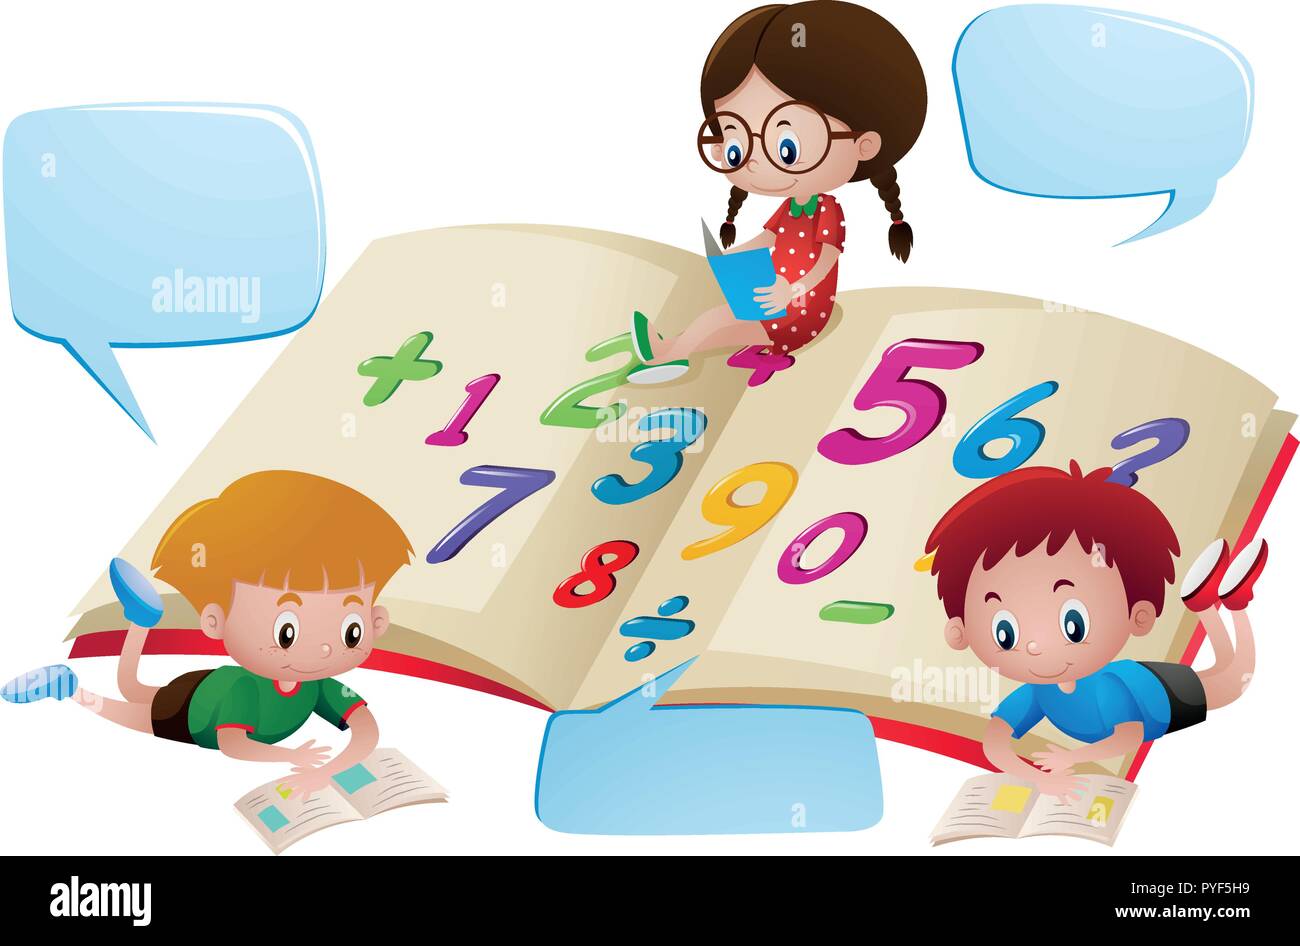 Клипарт математика для детей